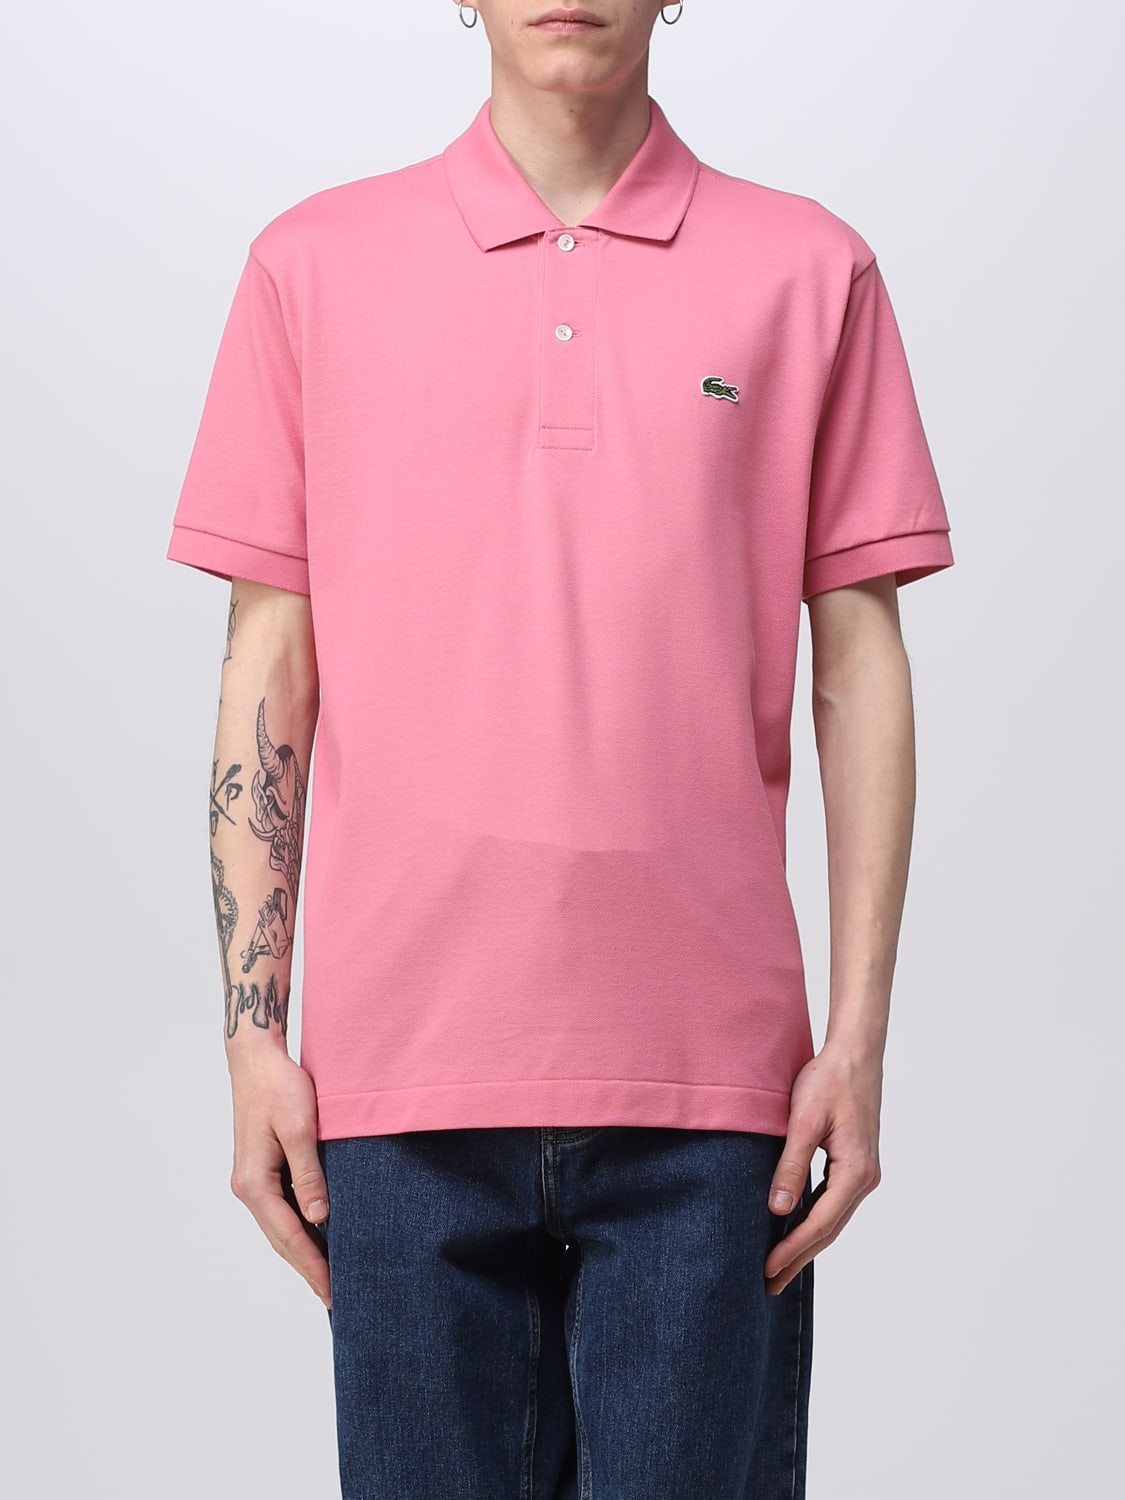 ラコステ ポロシャツ ピンク - ポロシャツ